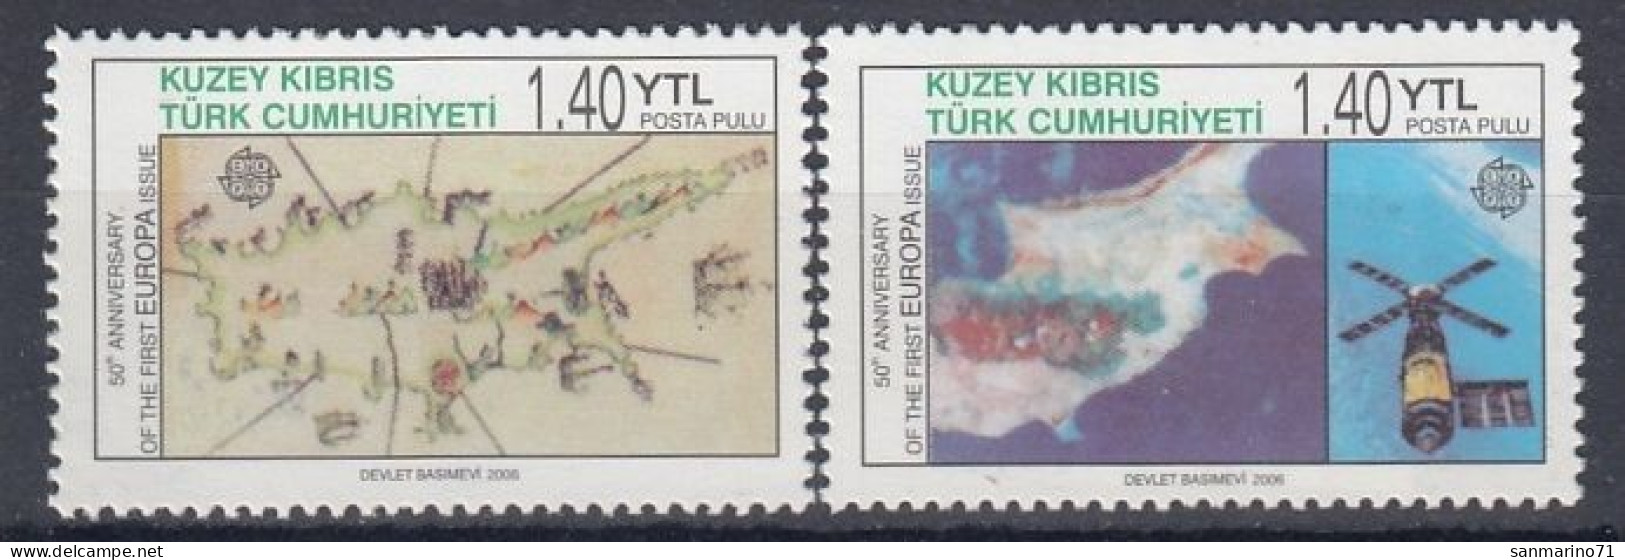 CYPRUS TURKEY 630-631,unused - 2006